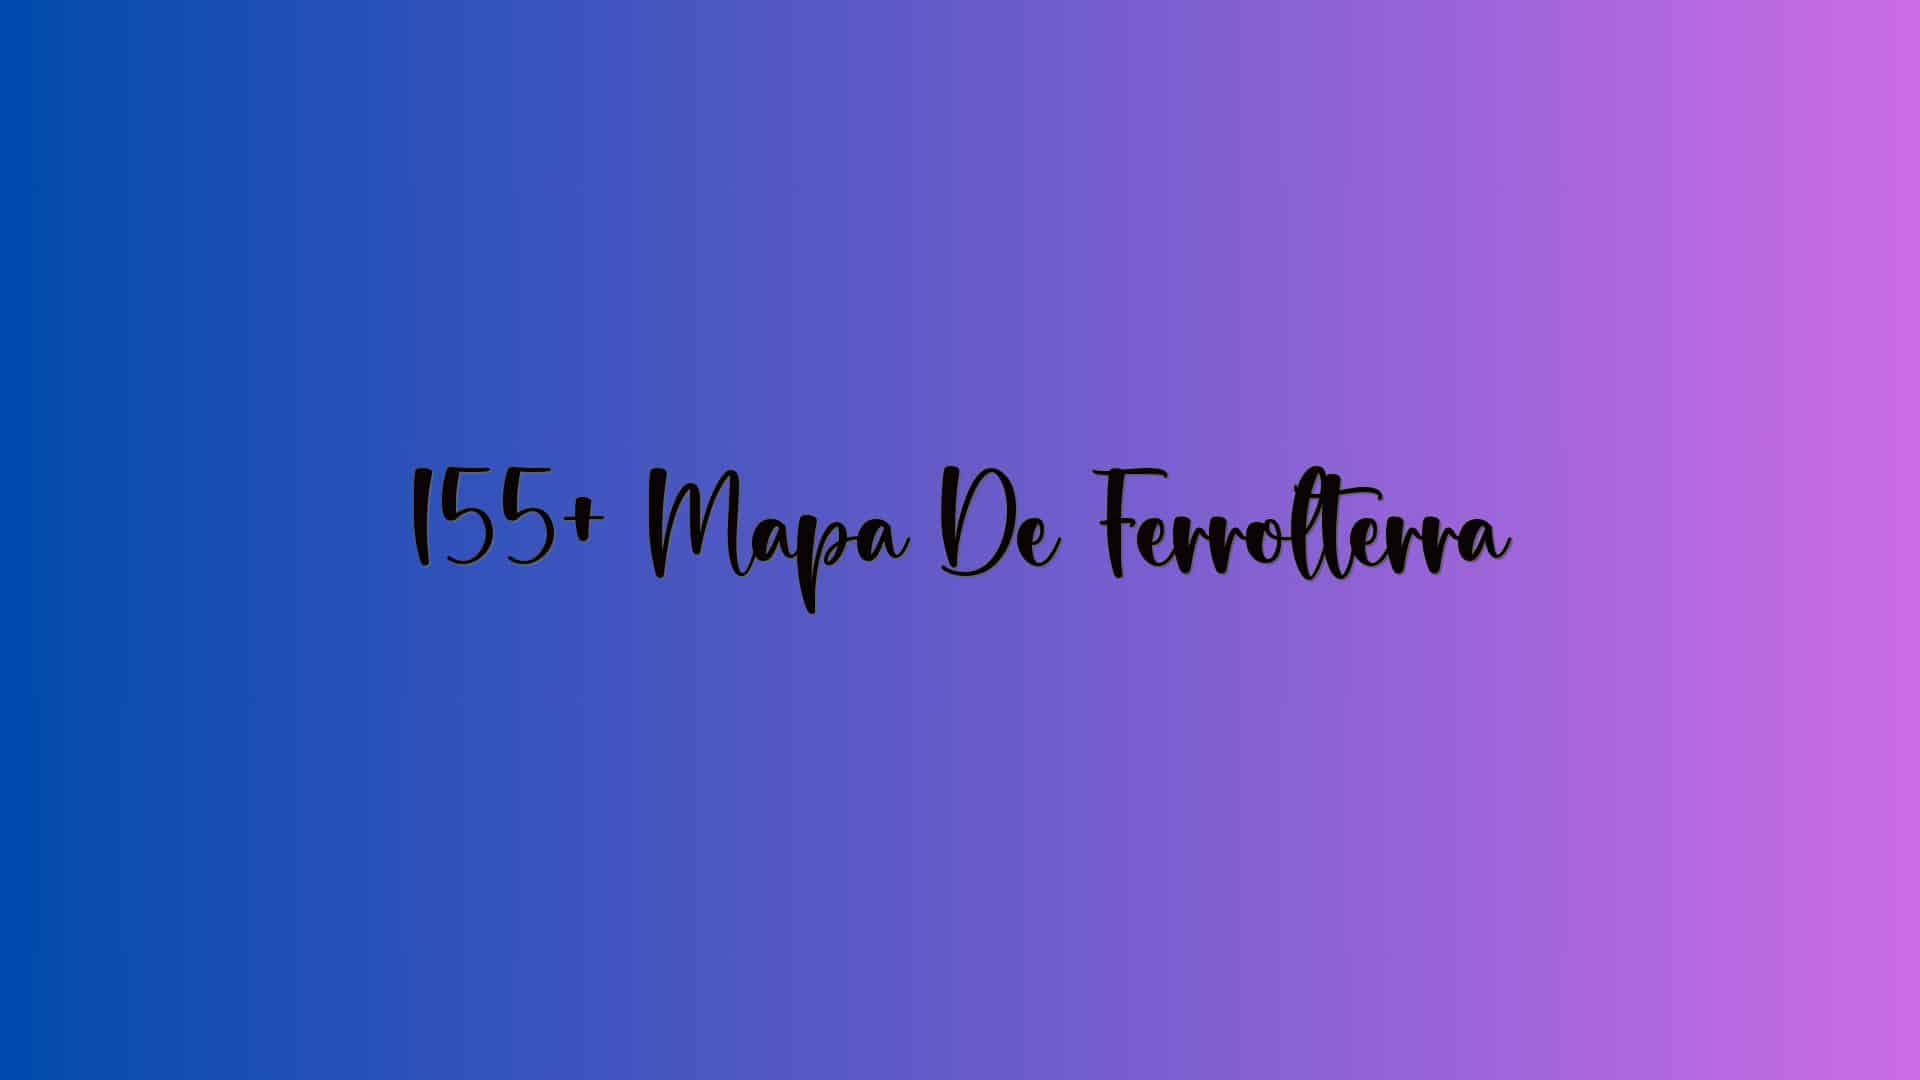 155+ Mapa De Ferrolterra